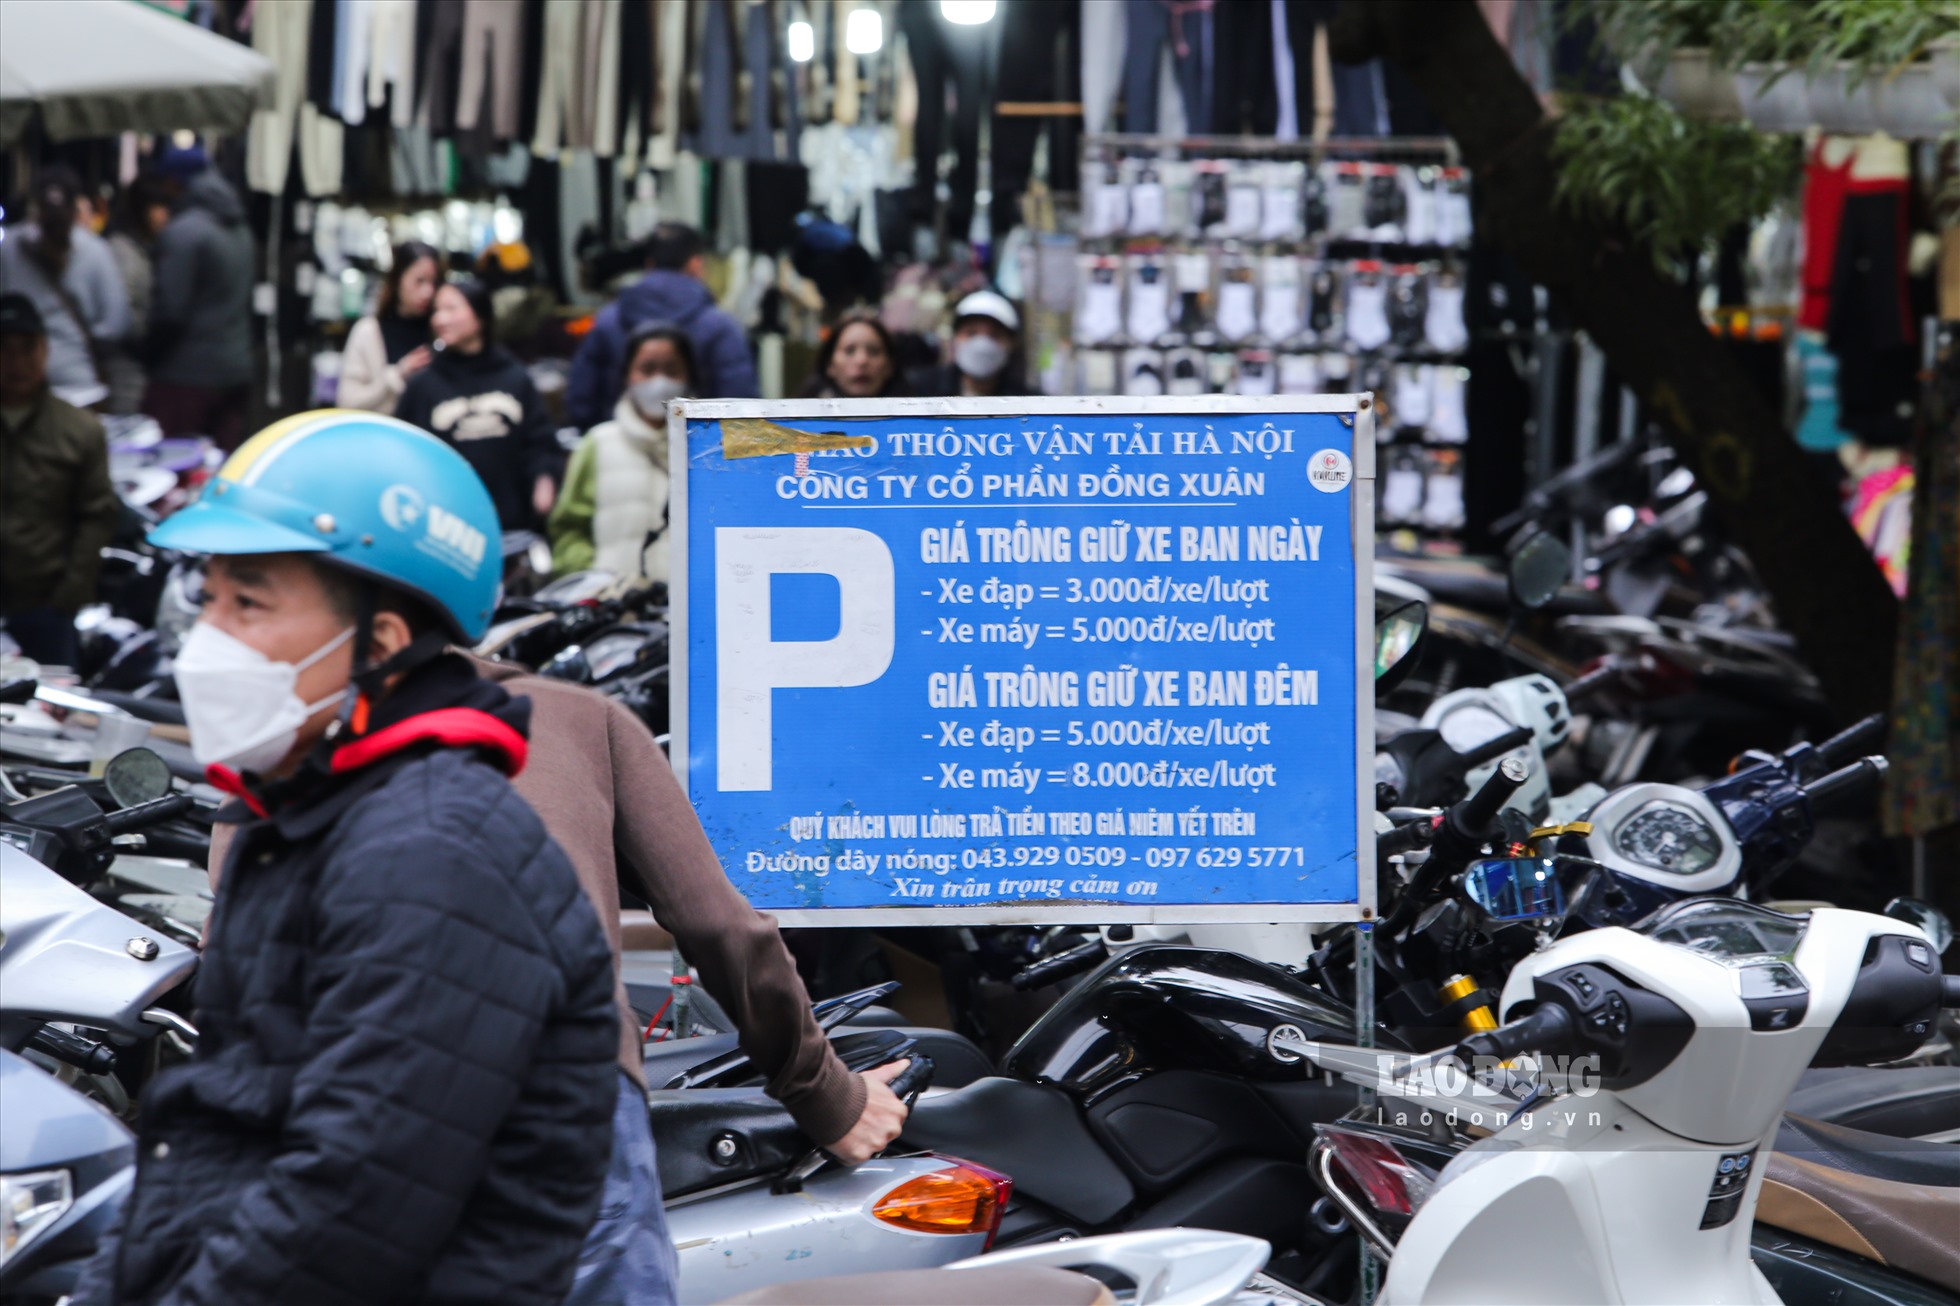 Một địa điểm gửi xe trên phố Đinh Liệt thu phí cao gấp nhiều lần so với thông báo.